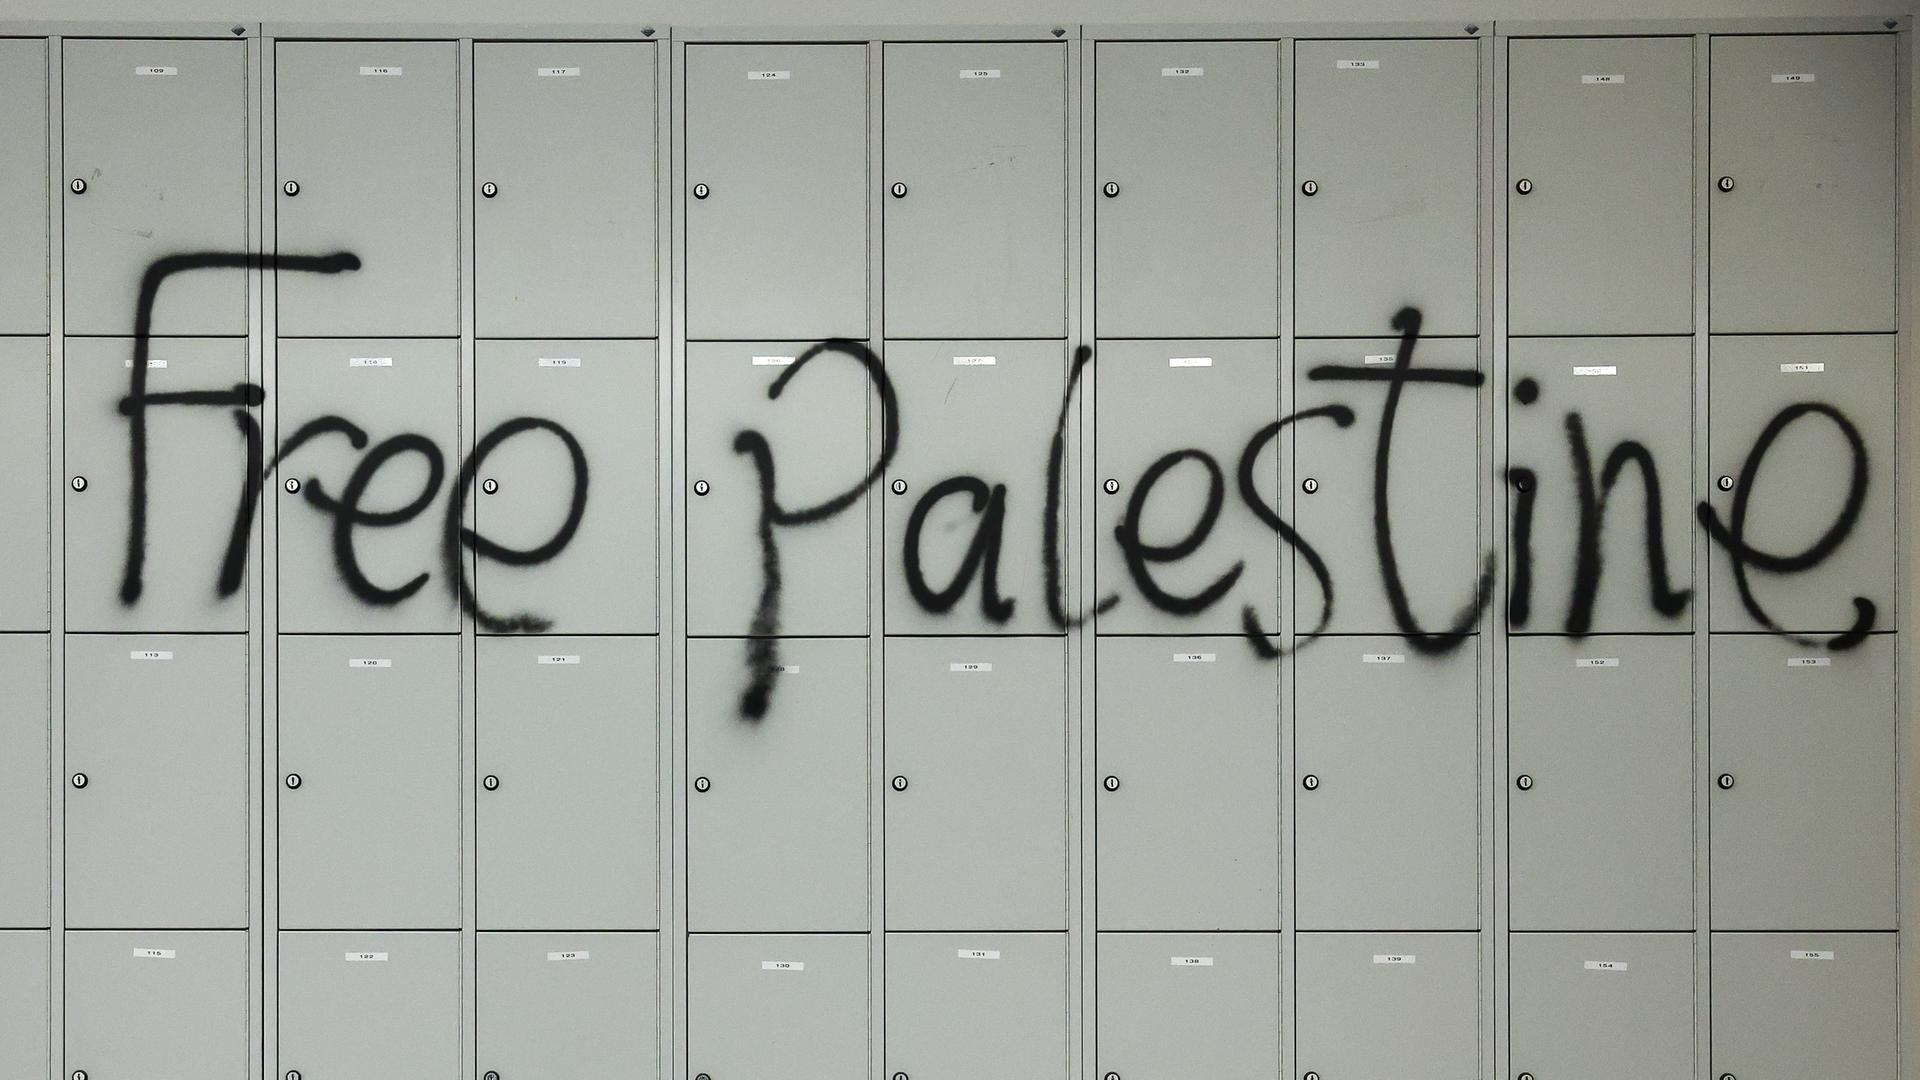 Sachsen, Leipzig: Der Schriftzug "Free Palestine" wurde während der Besetzung des Audimax der Universität Leipzig an eine Wand mit Schließfächern gesprüht.